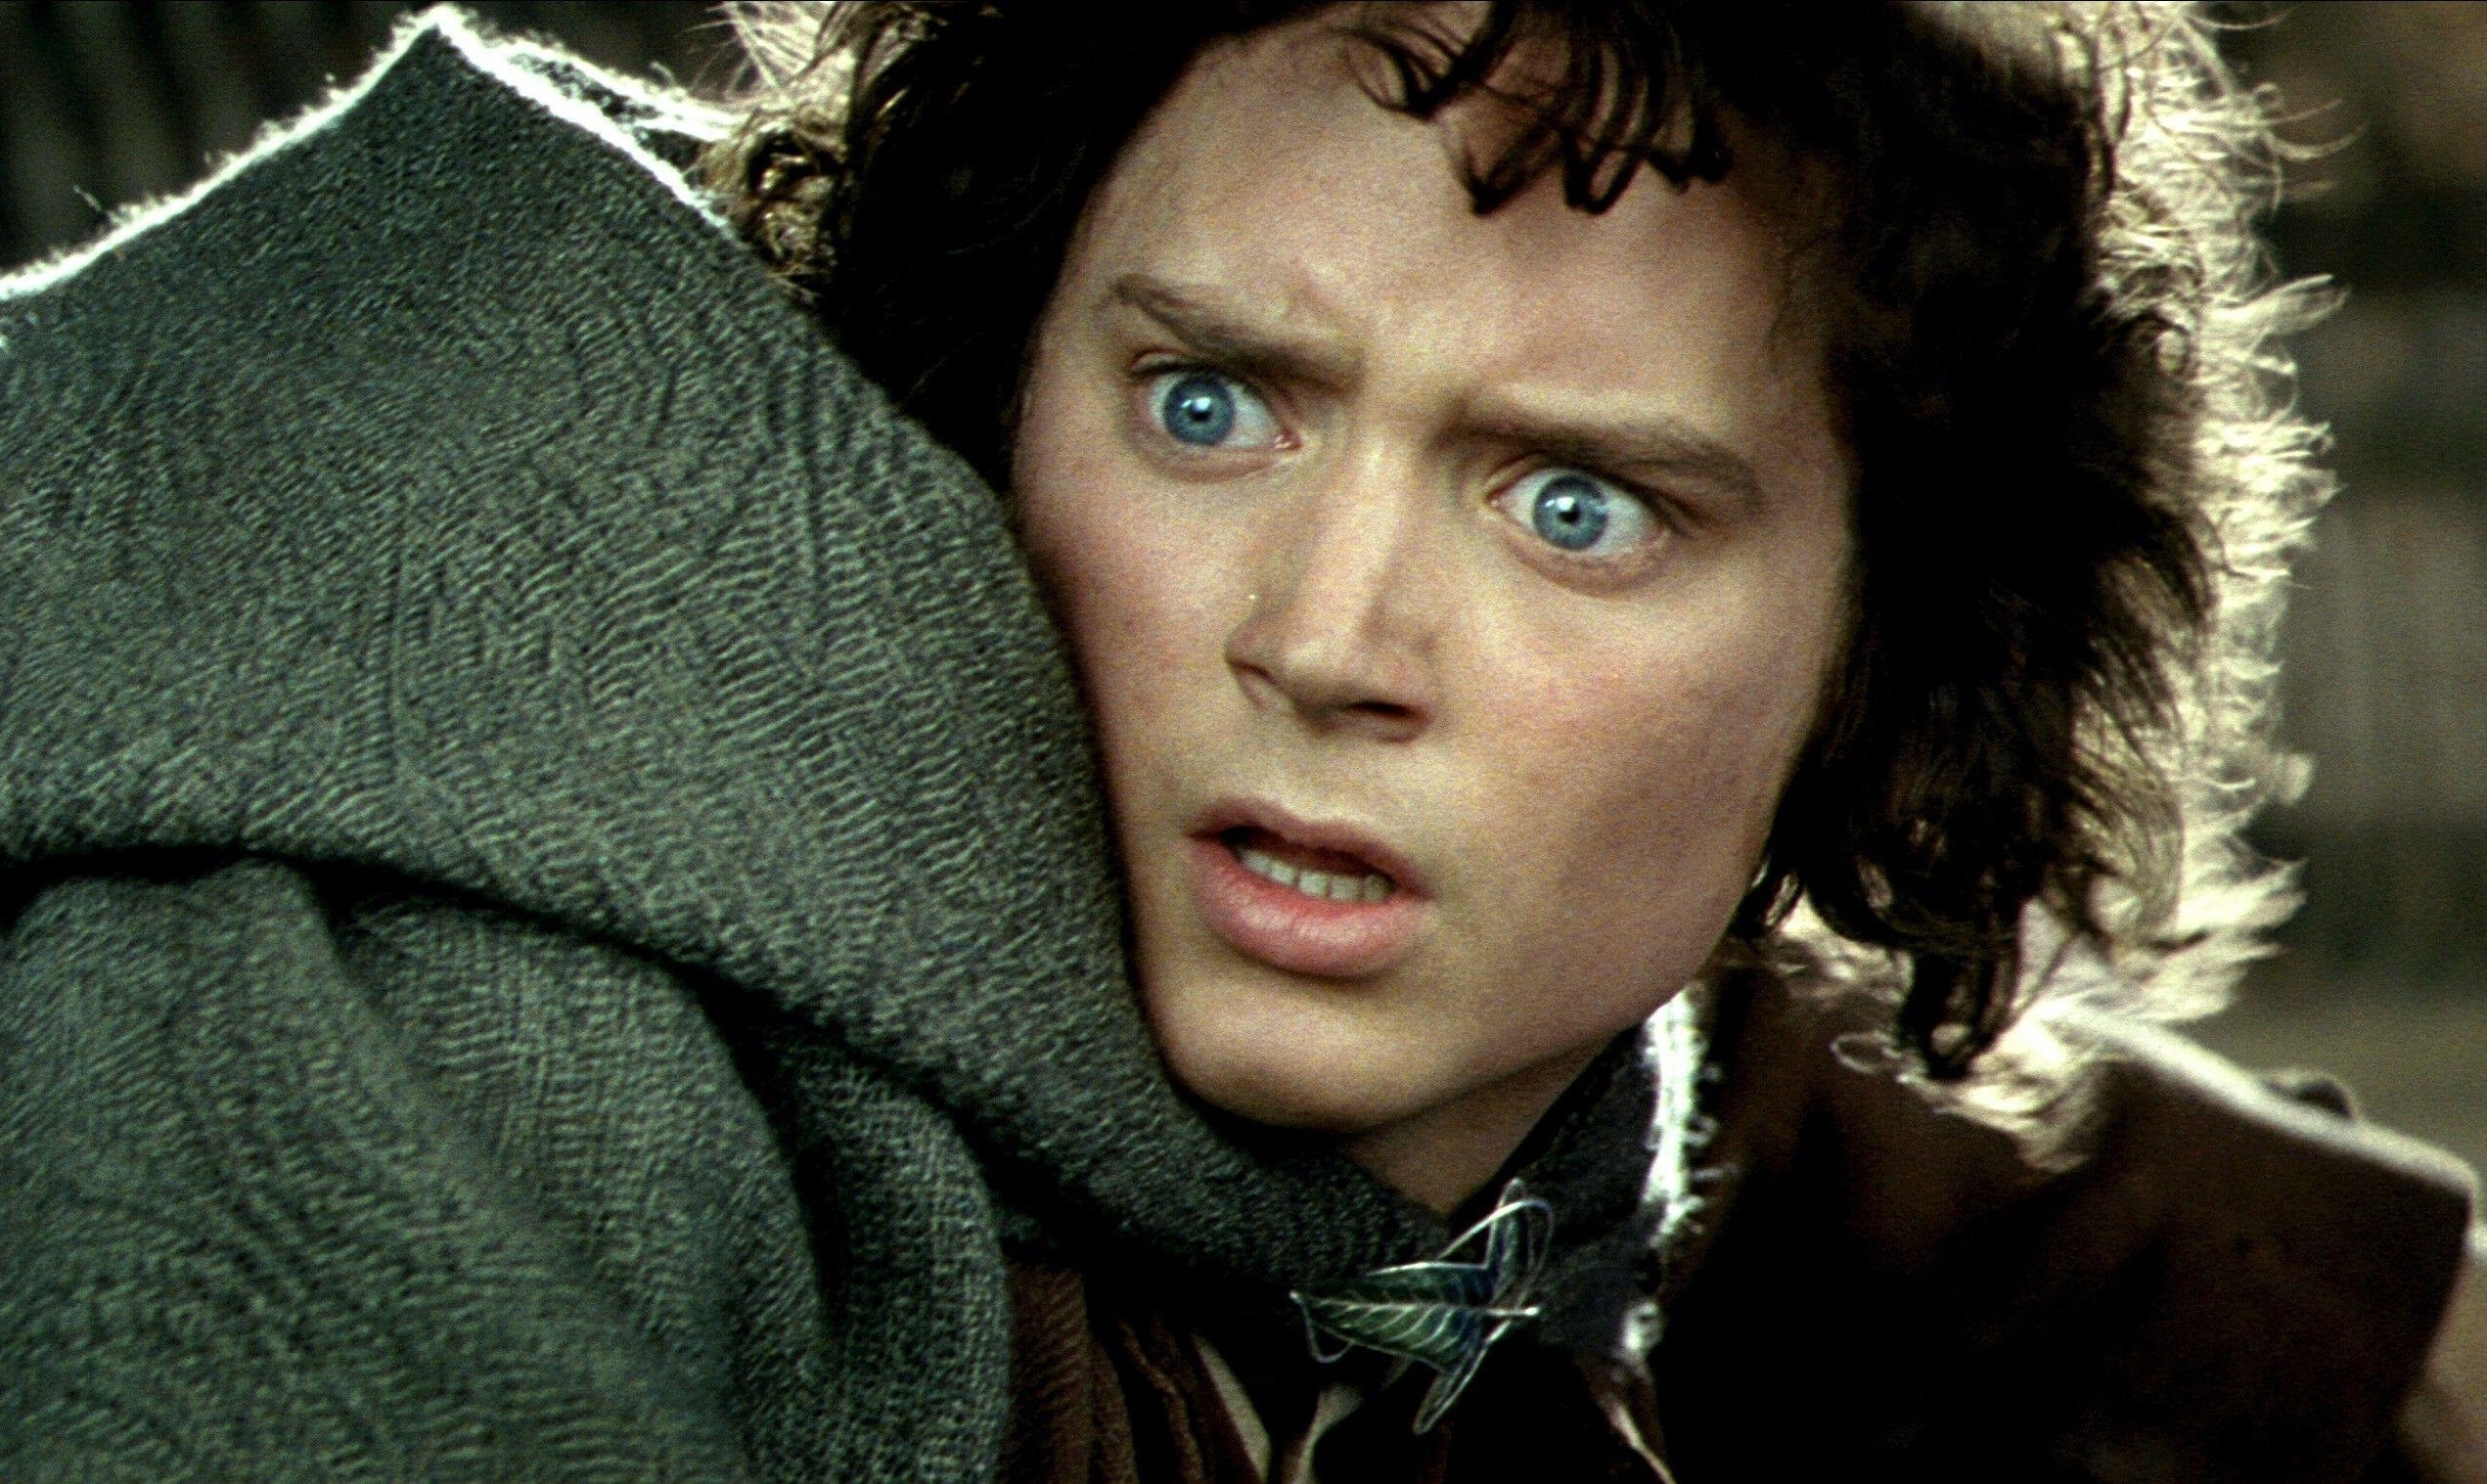 Close-up of Elijah as Frodo